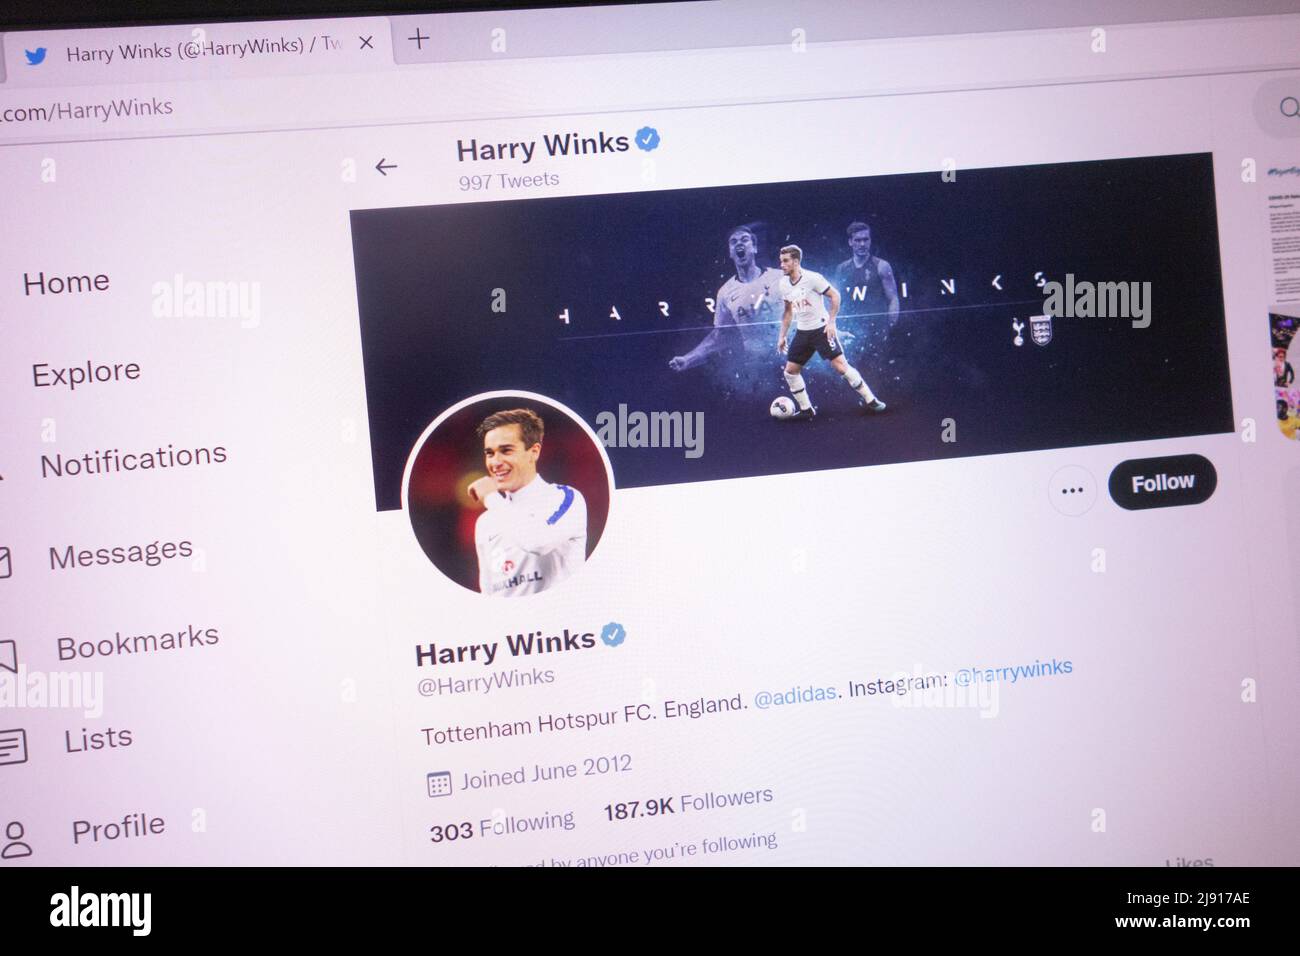 KONSKIE, POLONIA - 18 maggio 2022: Account Twitter ufficiale Harry Winks visualizzato sullo schermo del laptop Foto Stock